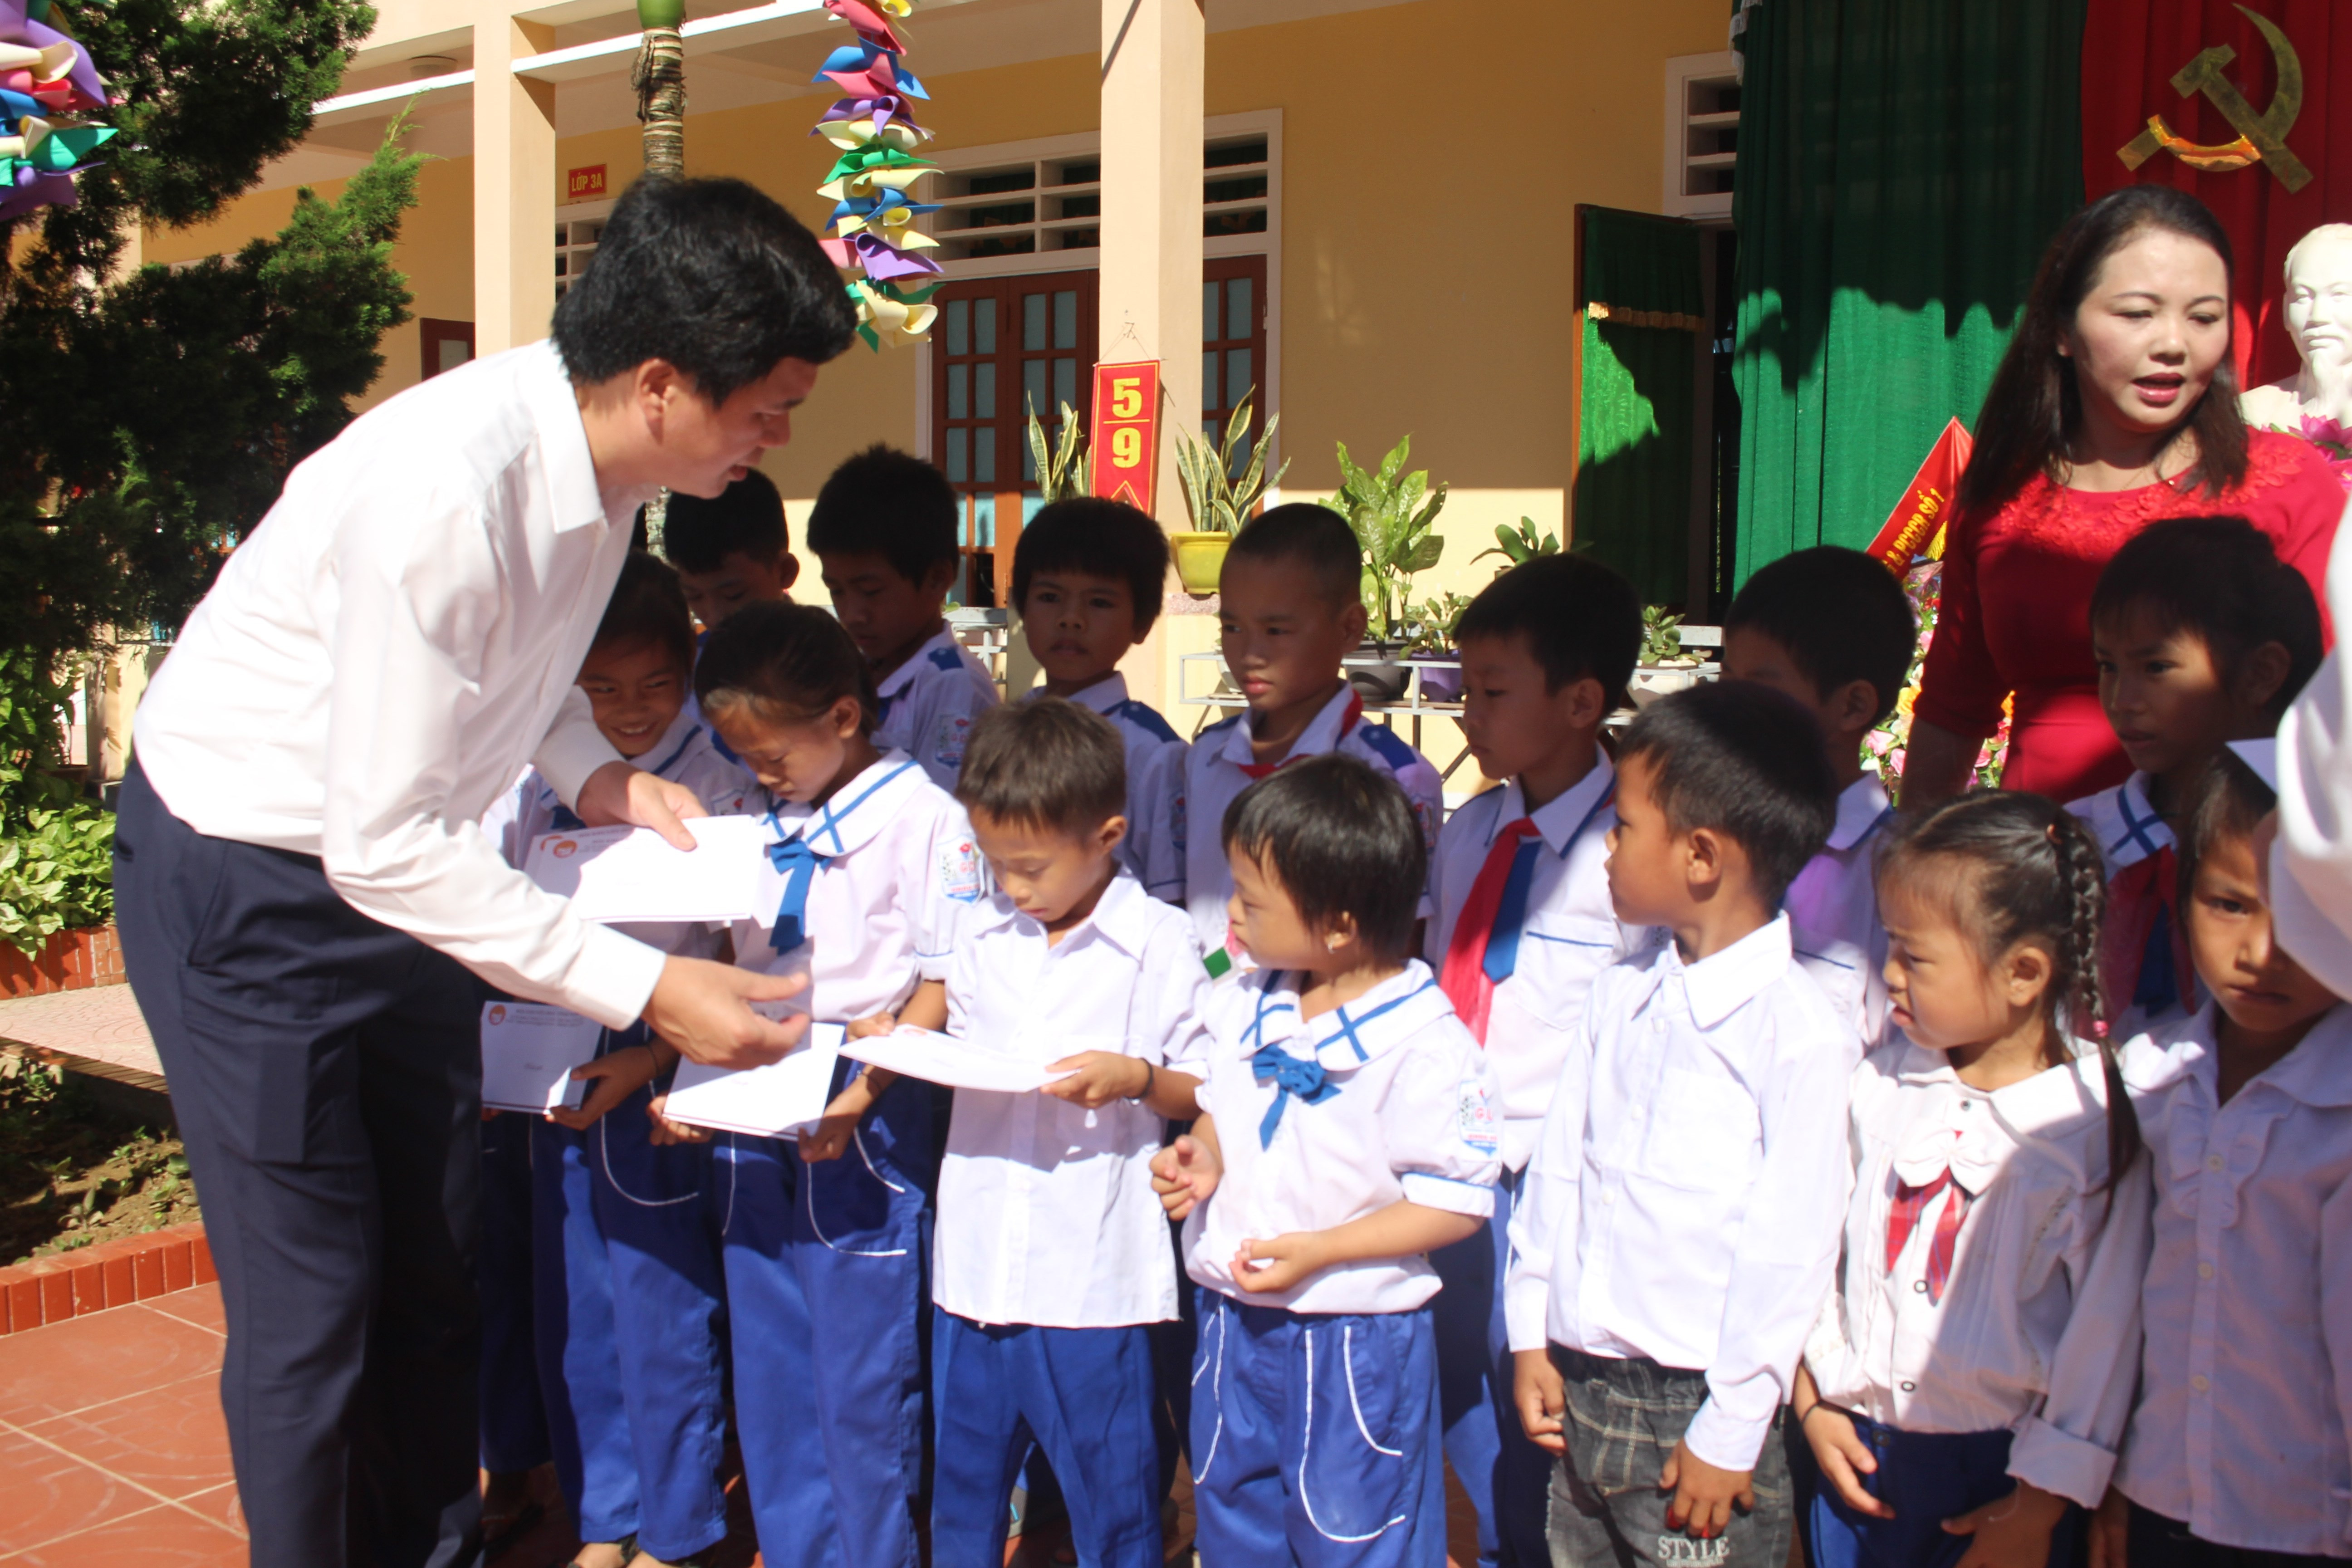 Lãnh đạo huyện Con Cuông trao quà Tiếp sức đến trường cho học sinh có hoàn cảnh khó khăn. Ảnh: Bá Hậu